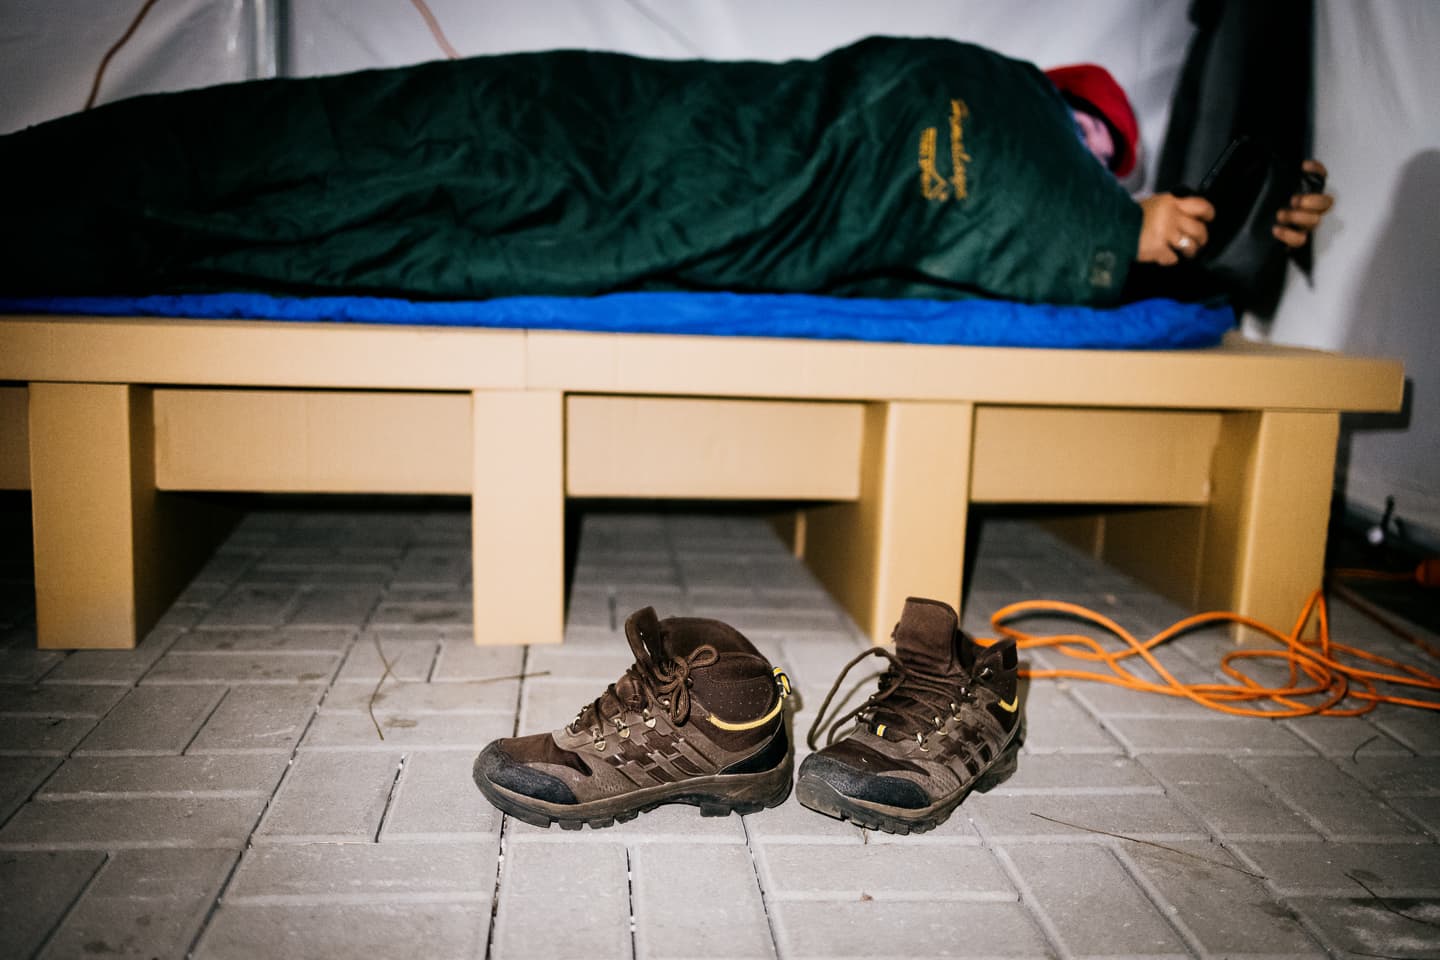 Kibírna egy teljes éjszakát az utcán, pár fokban? – Érsekújvárban rámutattak, mit élnek át a hajléktalanok nap mint nap (FOTÓK)